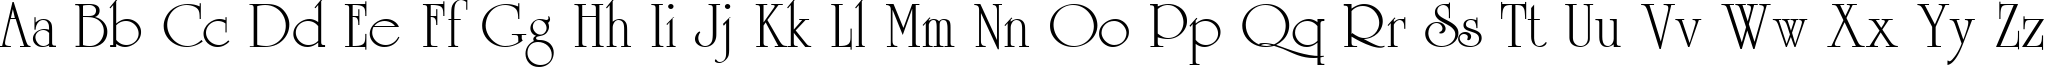 Пример написания английского алфавита шрифтом UniCyrillic